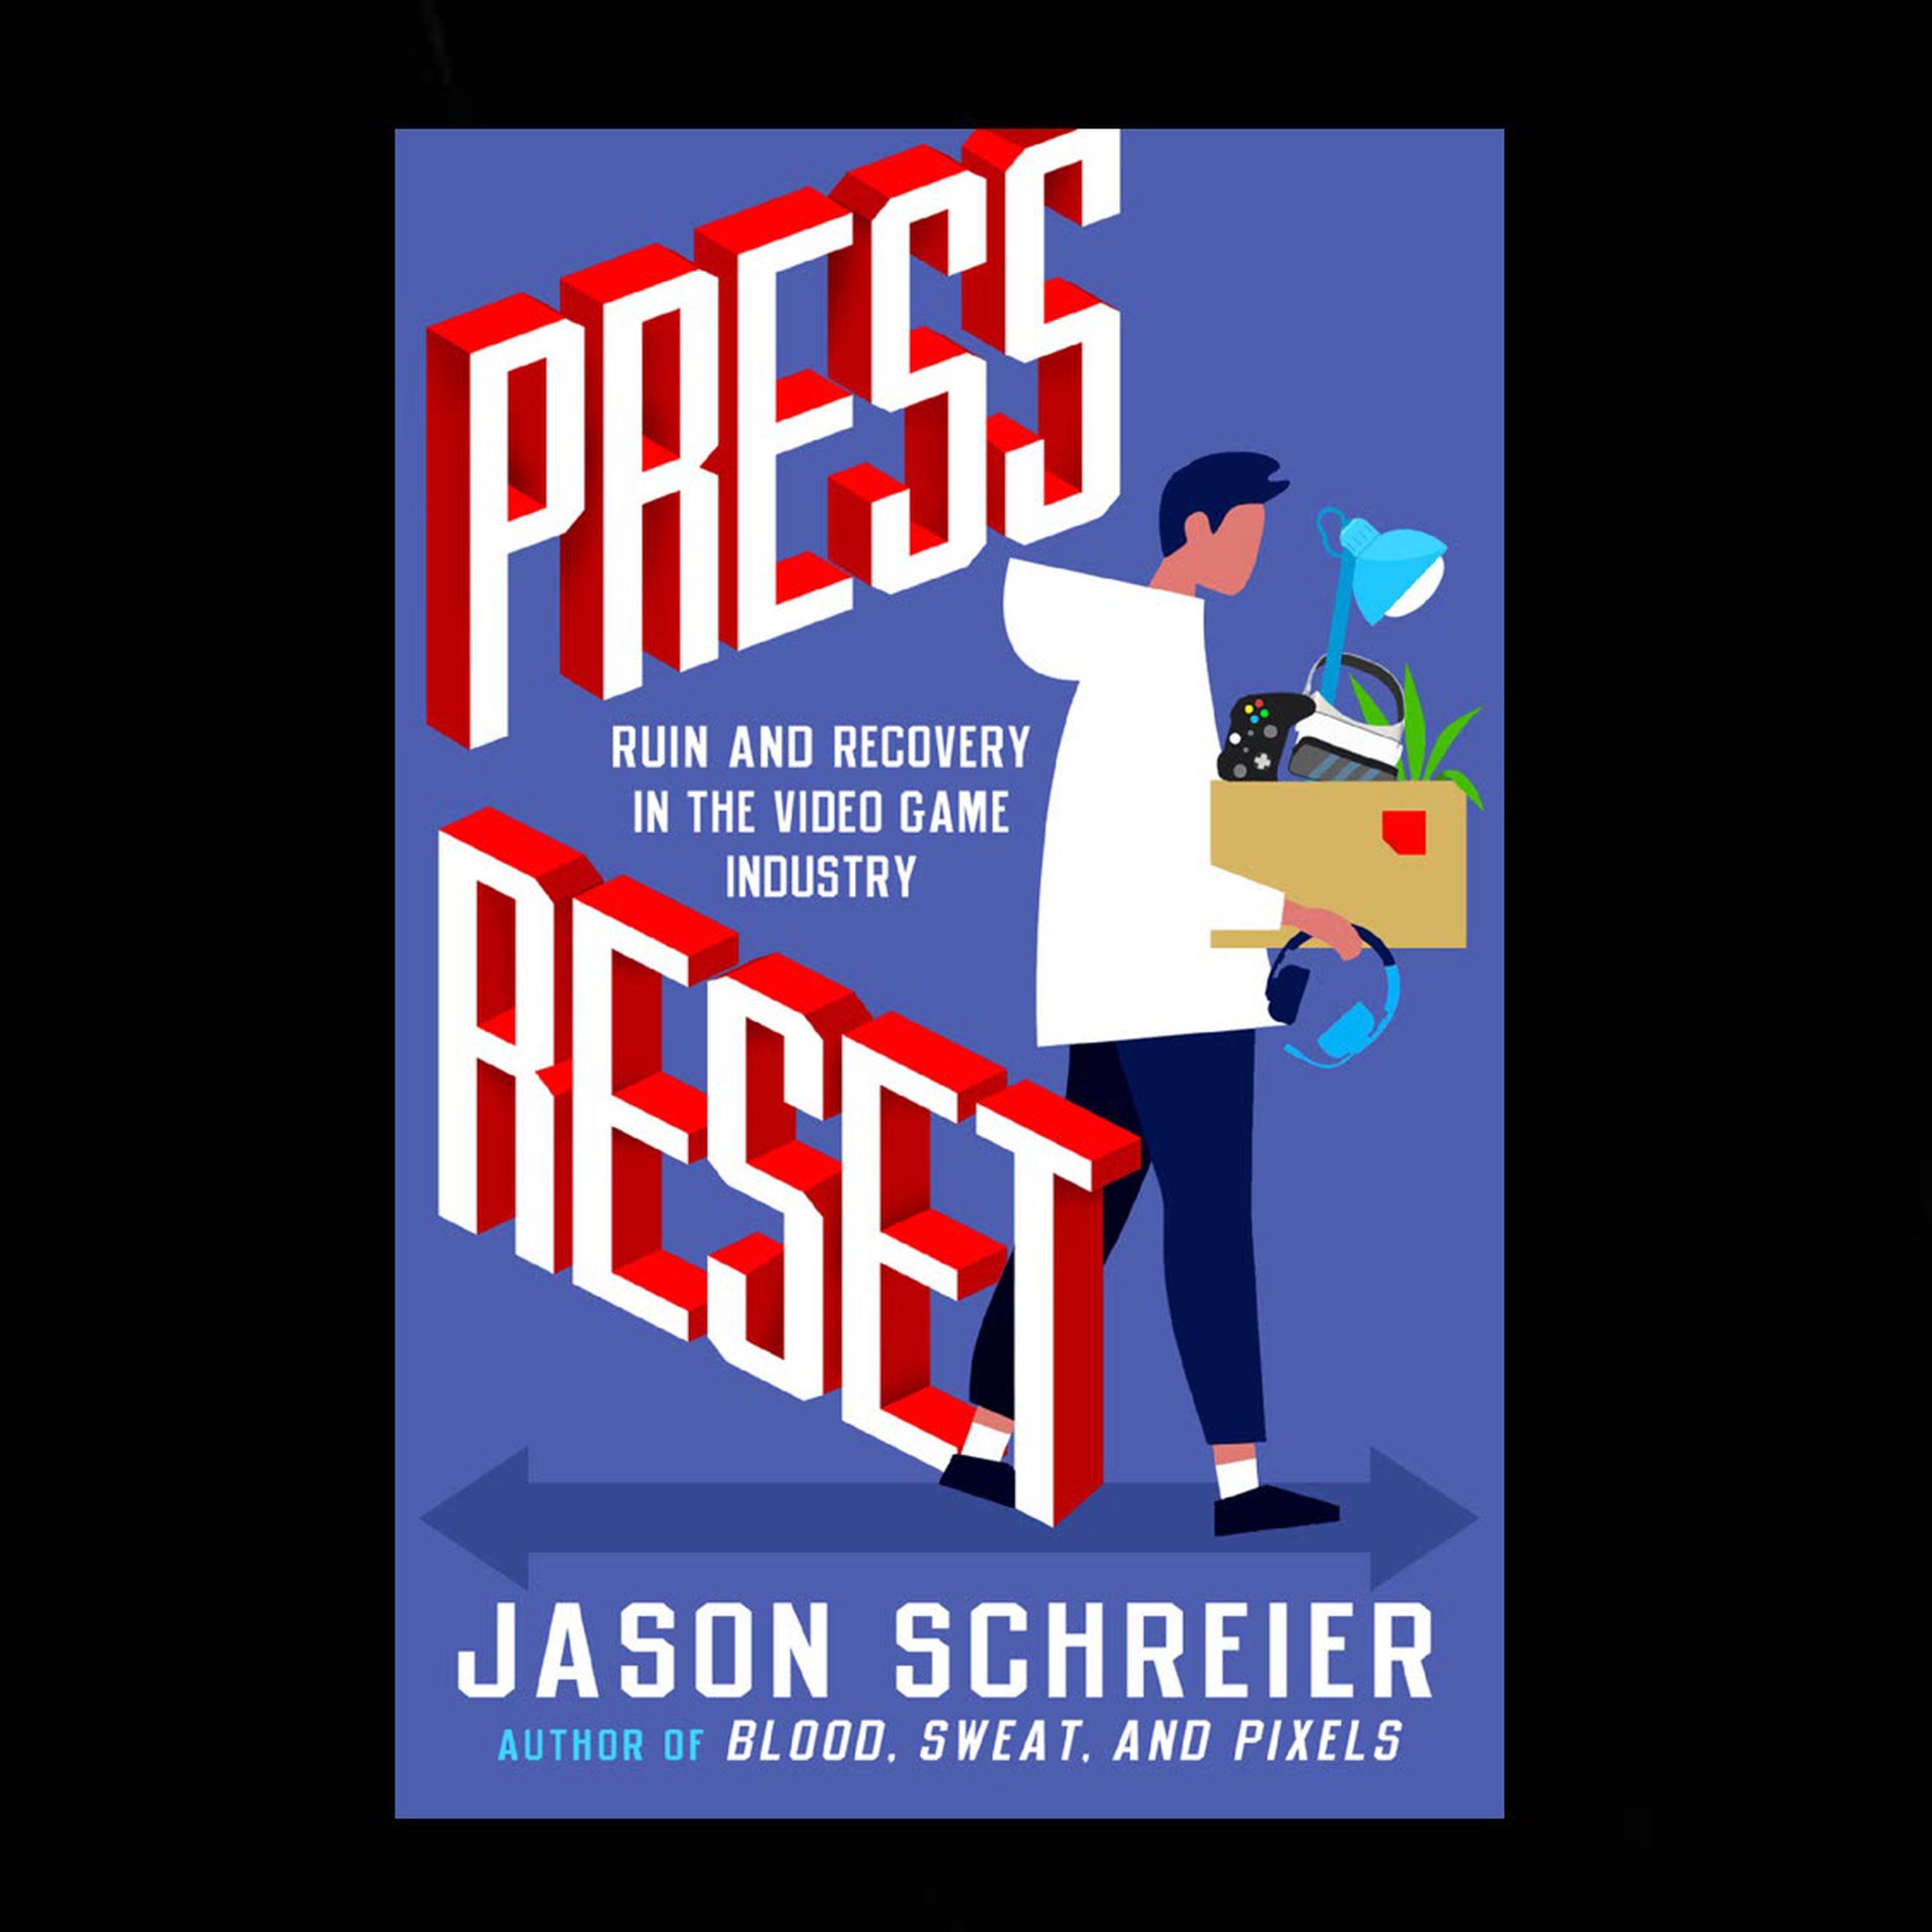 Press Reset by Jason Schreier cover